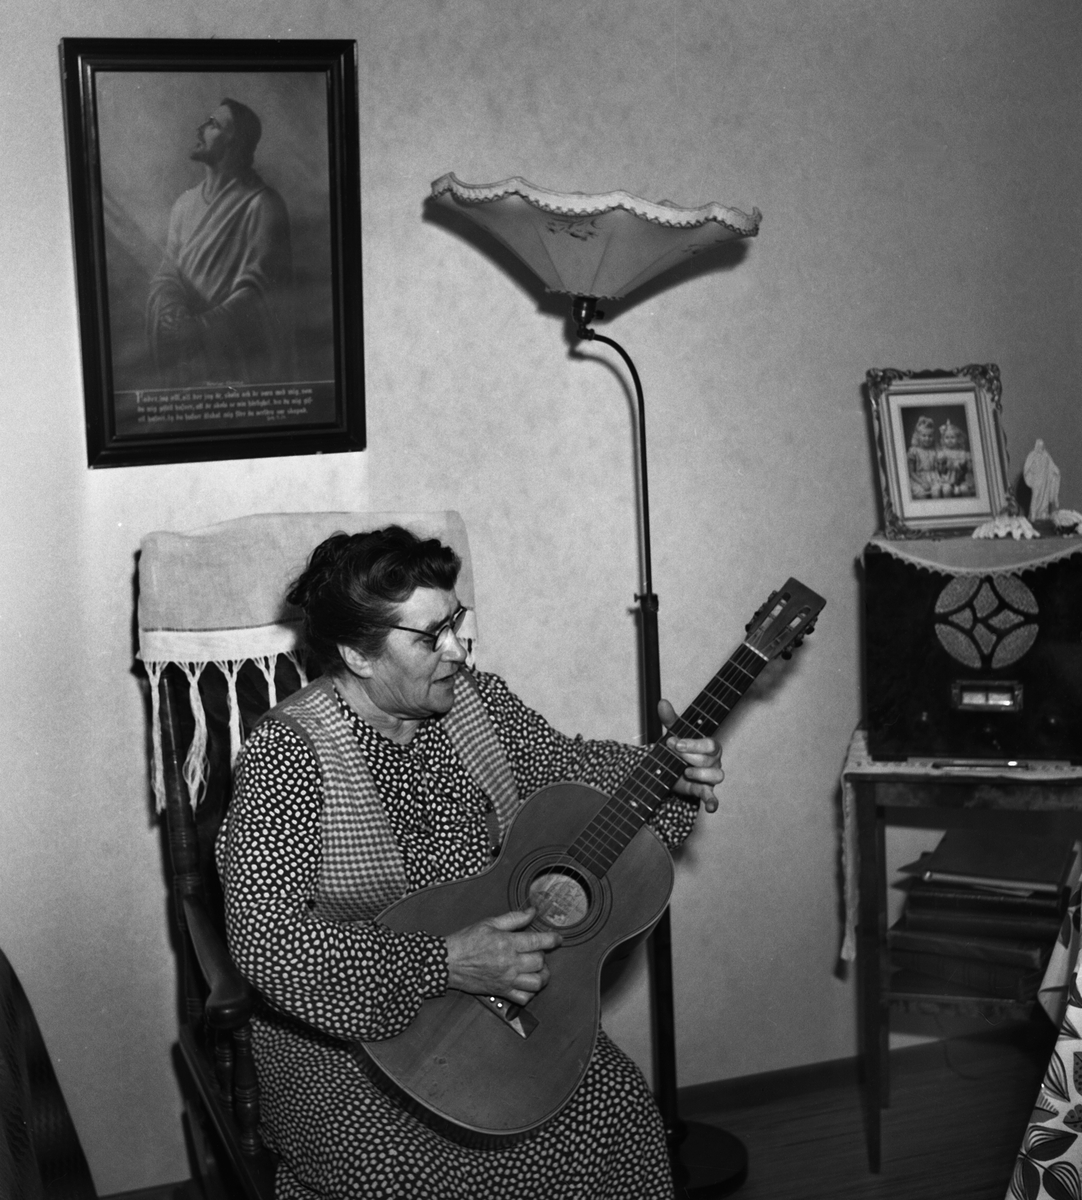 Fru Tekla Unell, 68 år gammal. Hon var glad över att få bo i Linköpings pensionärslägenheter. Hon bodde på Götgatan 11a i övre Vasastaden. Hon var änka till babtistpastorn David Uhnell. På bilden håller hon i en gitarr och sitter i en gungstol.

...
...
...

385 bilder om Linköping på 1950-talet från tidningen Östgötens arkiv. Framtidstro och optimism är ord som sammanfattar Linköping på femtiotalet. Årtiondet innebar satsningar för att förbättra linköpingsbornas livsvillkor. Bostadsfrågan och trafiklösningarna dominerade den lokalpolitiska agendan.
Bilderna digitaliserades år 2013.